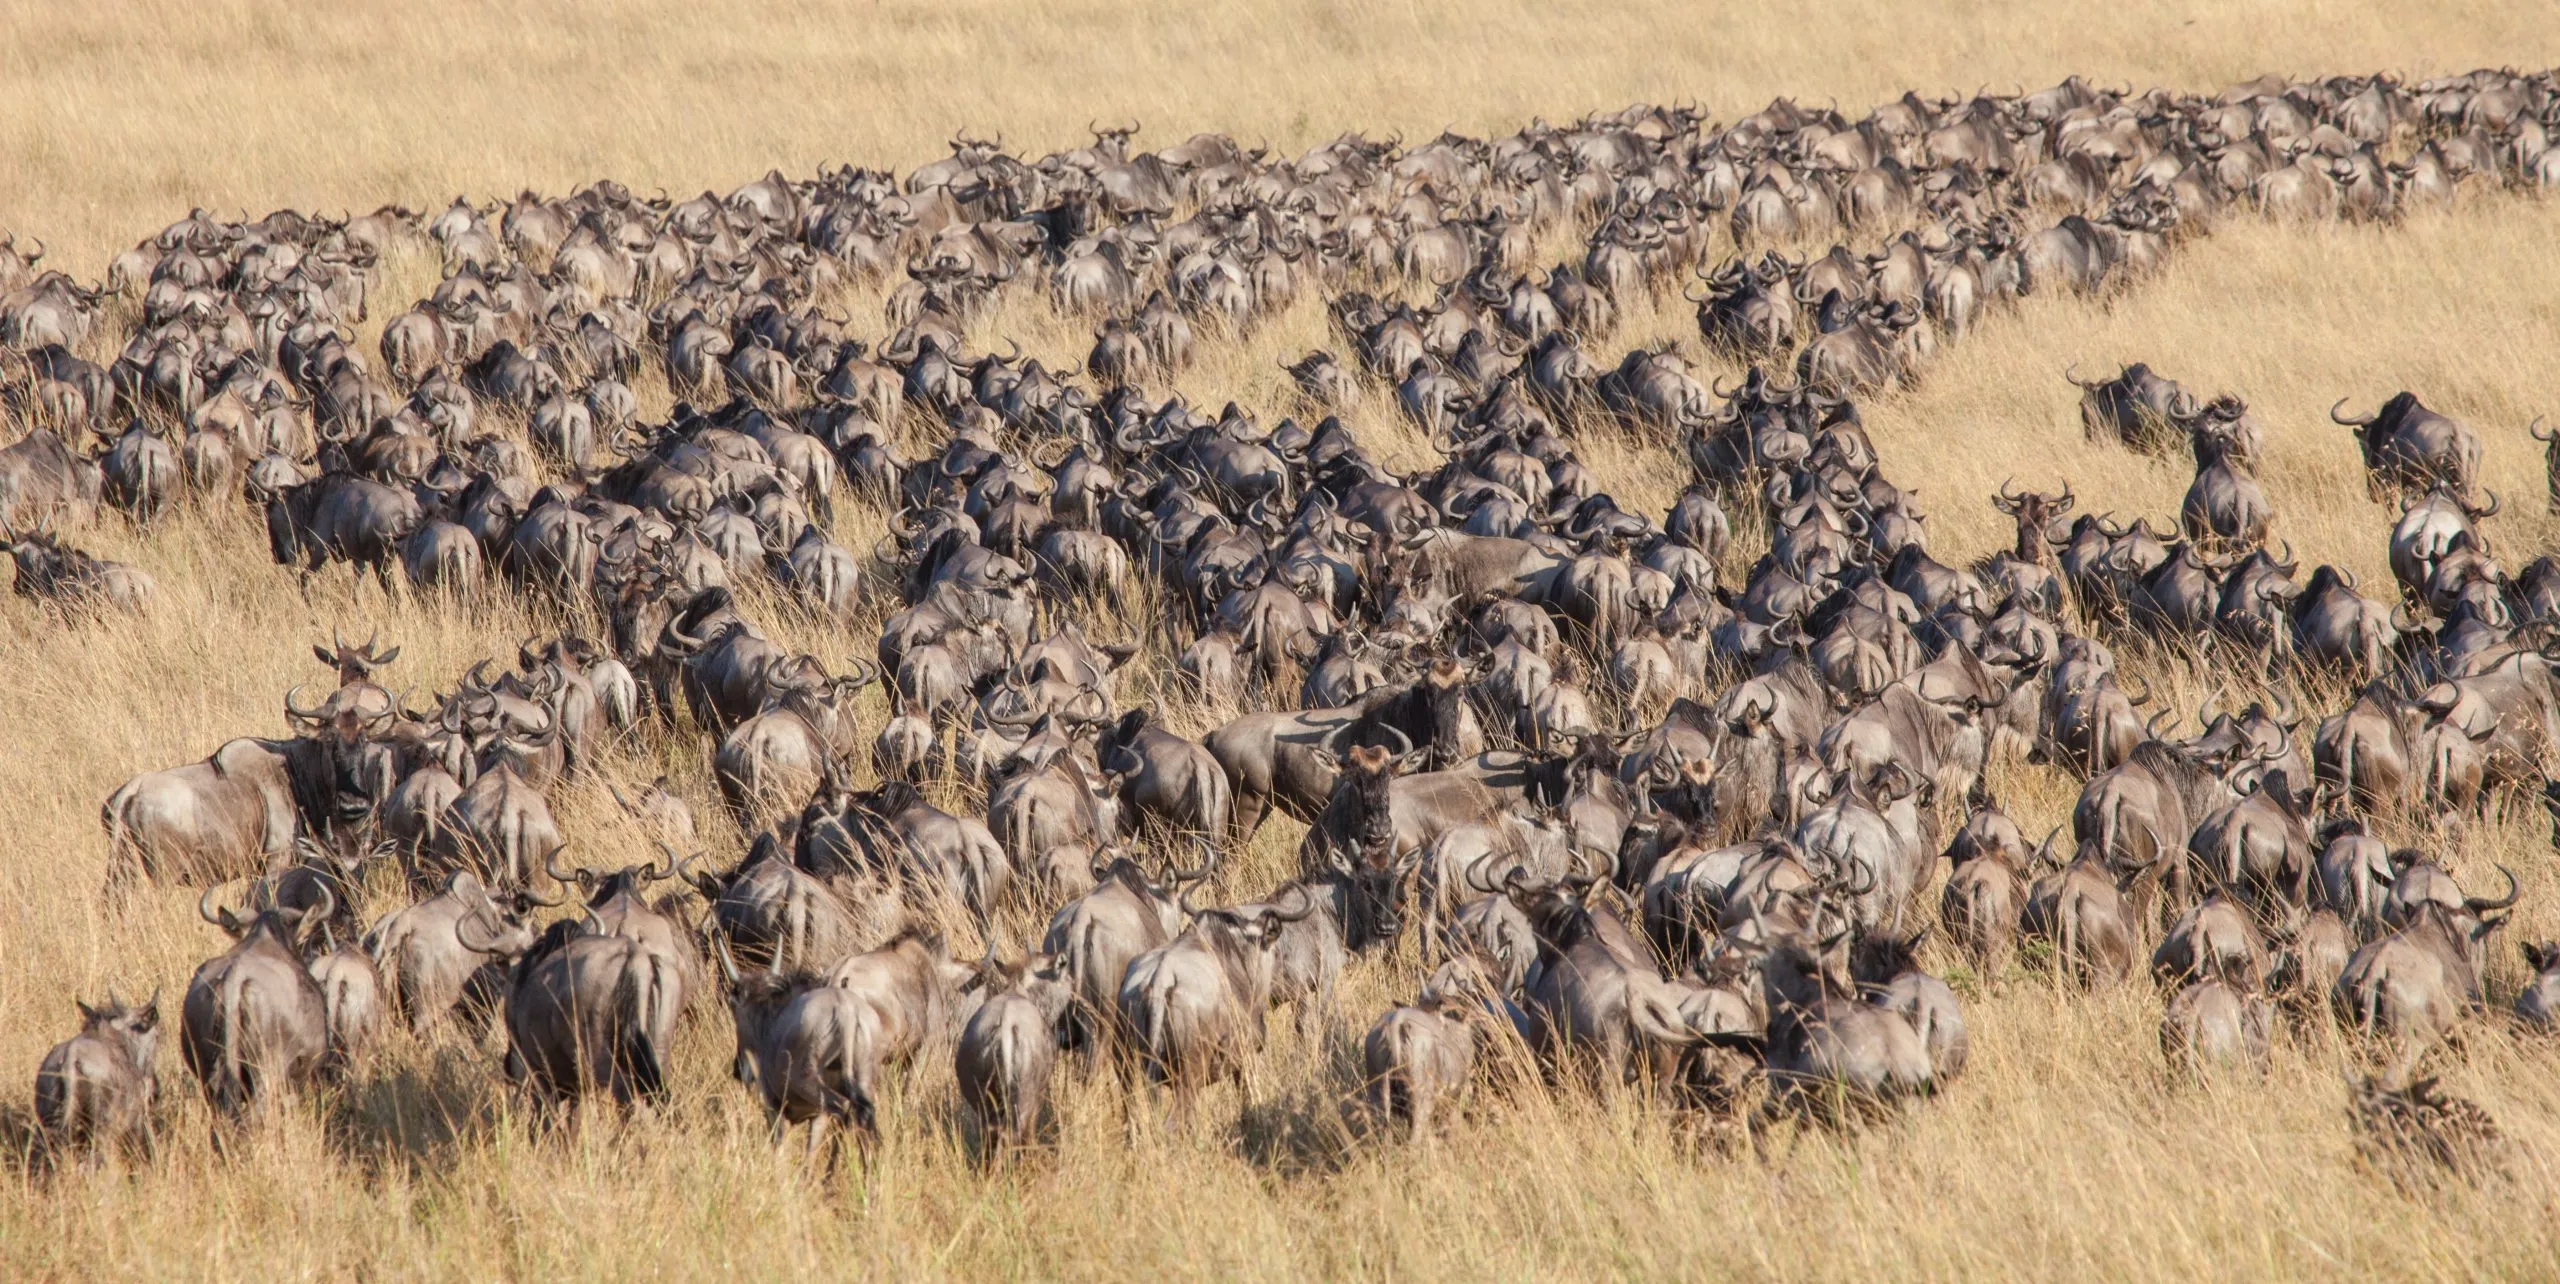 Longas filas e massas de gnus na Grande Migração do Serengeti e Masai Mara, na África Oriental